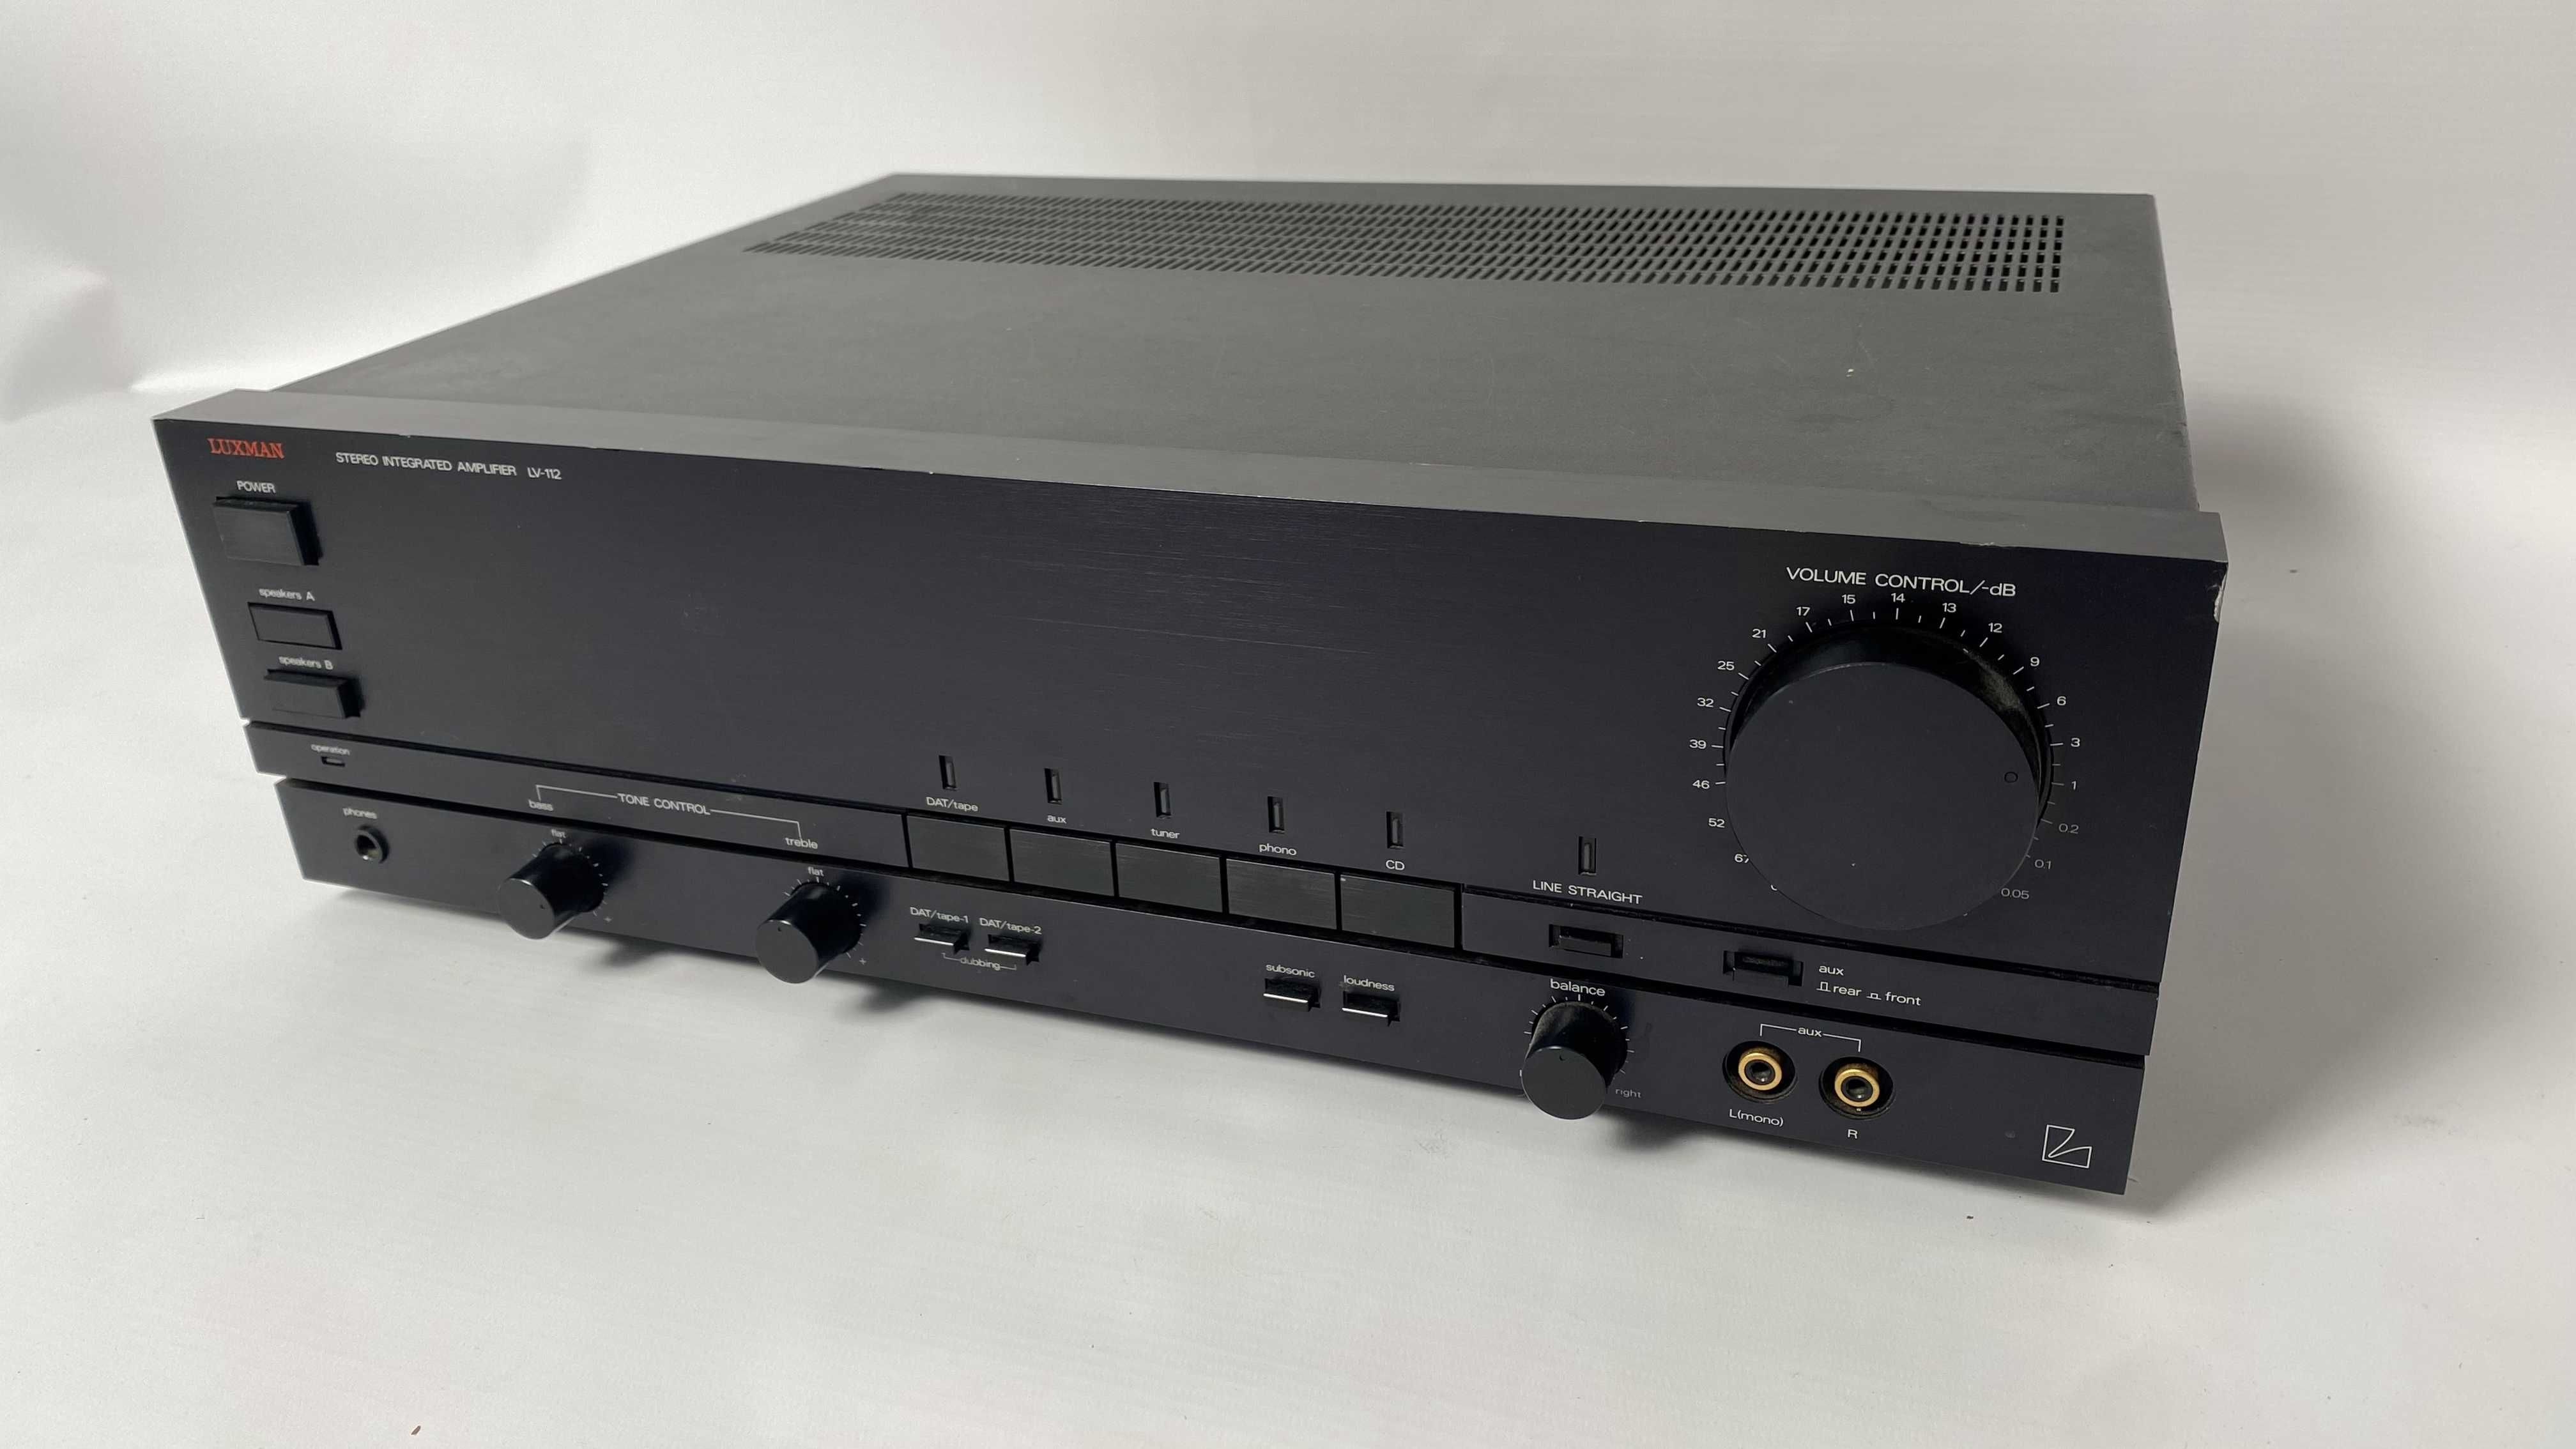 Wzmacniacz stereo Luxman LV-112